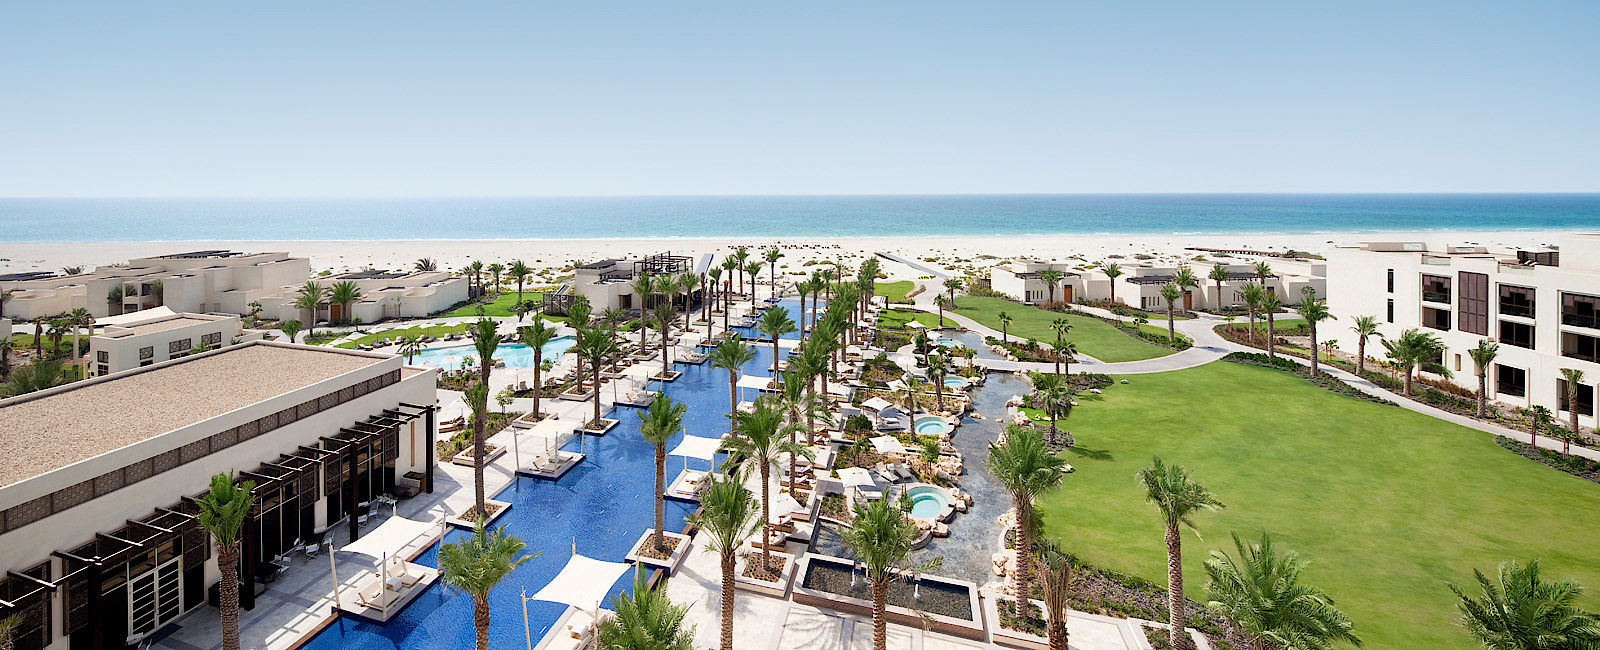 HOTELTEST
 Park Hyatt Abu Dhabi Hotel and Villas 
 Lifestyle auf arabisch 